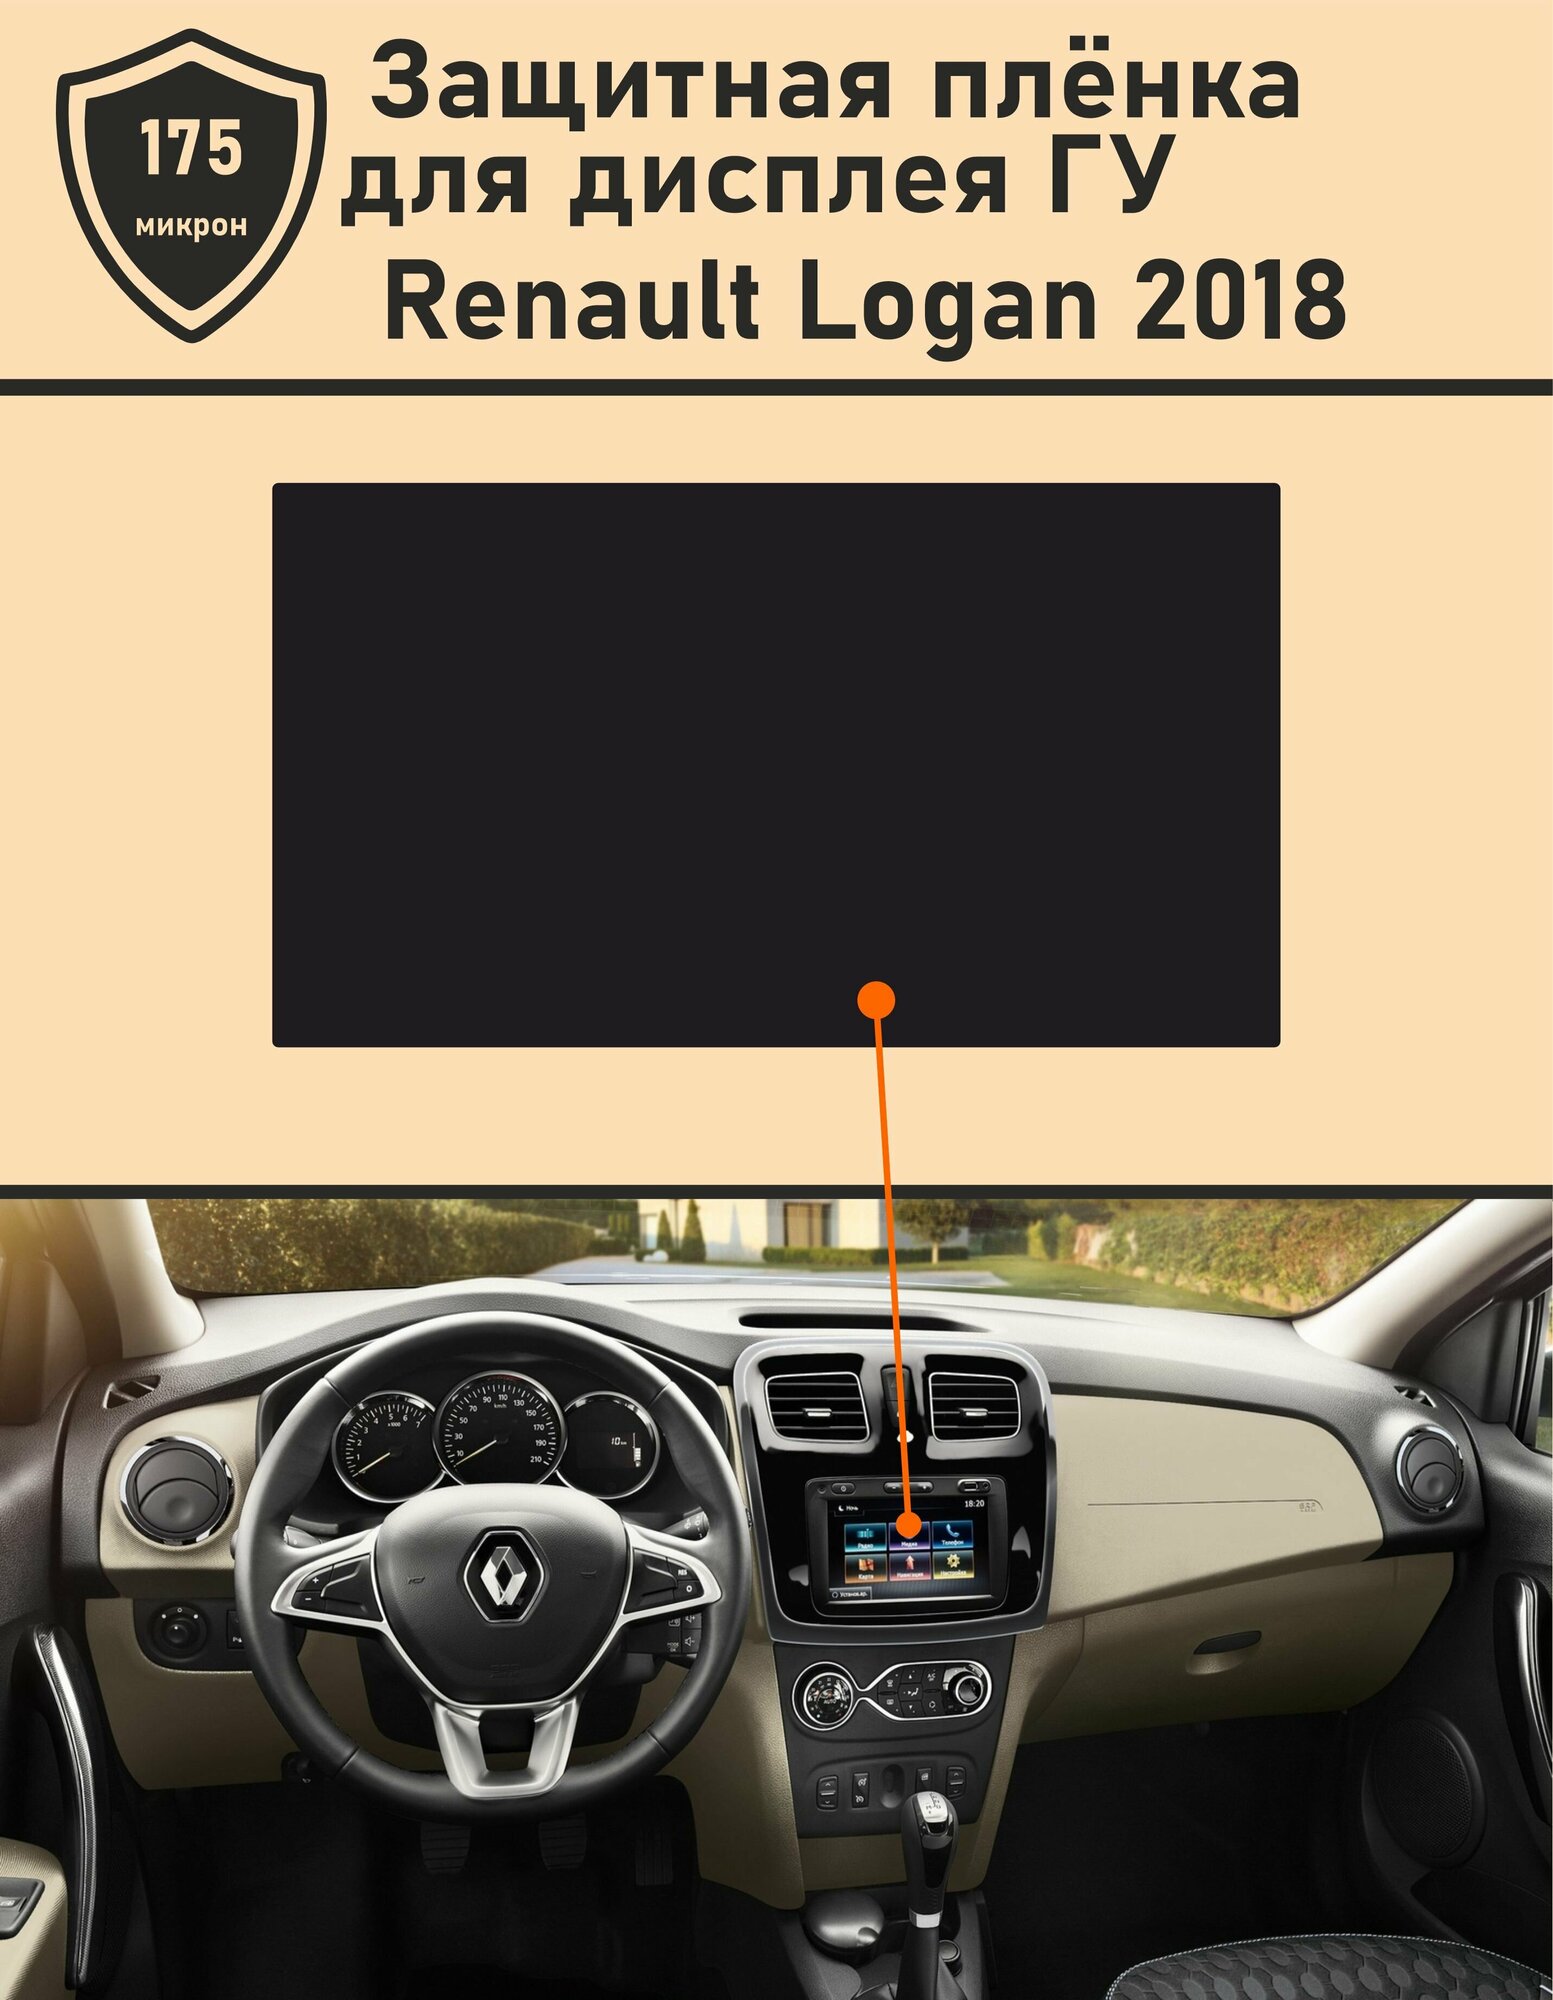 Renault Logan 2018/Защитная пленка для дисплея ГУ